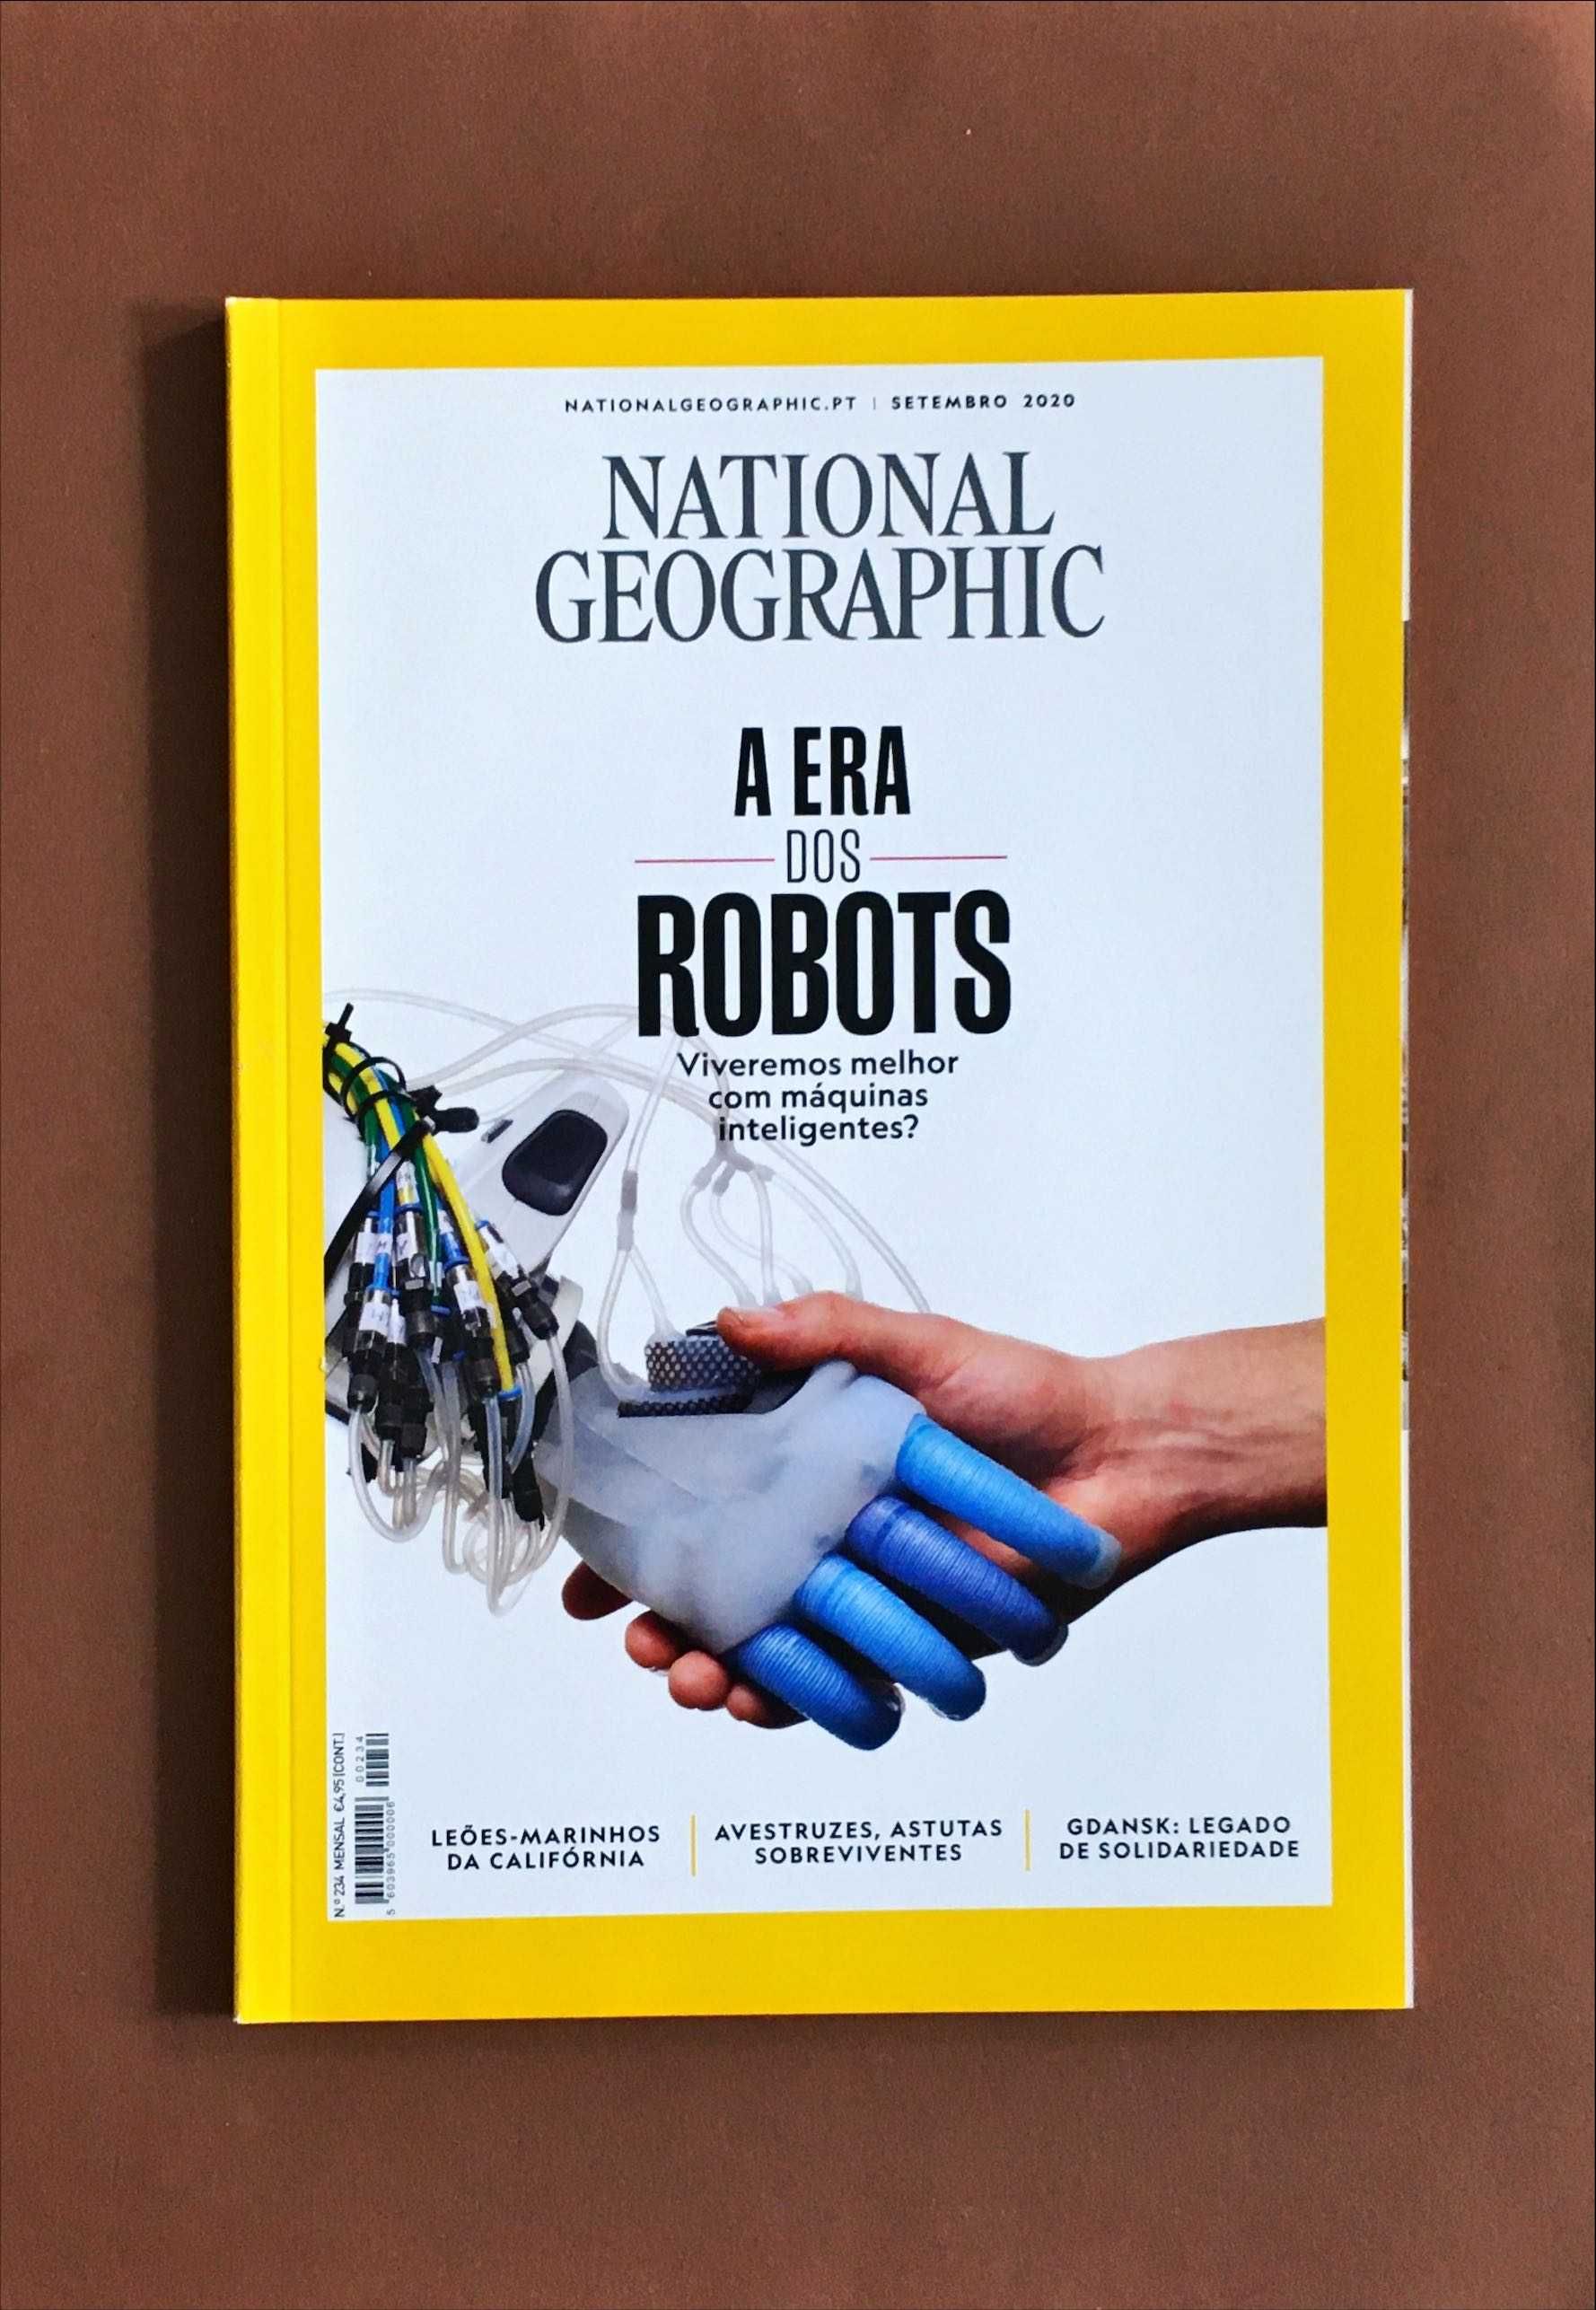 REVISTA National Geographic [4€ cada] Edição Portuguesa 2020 e 2021